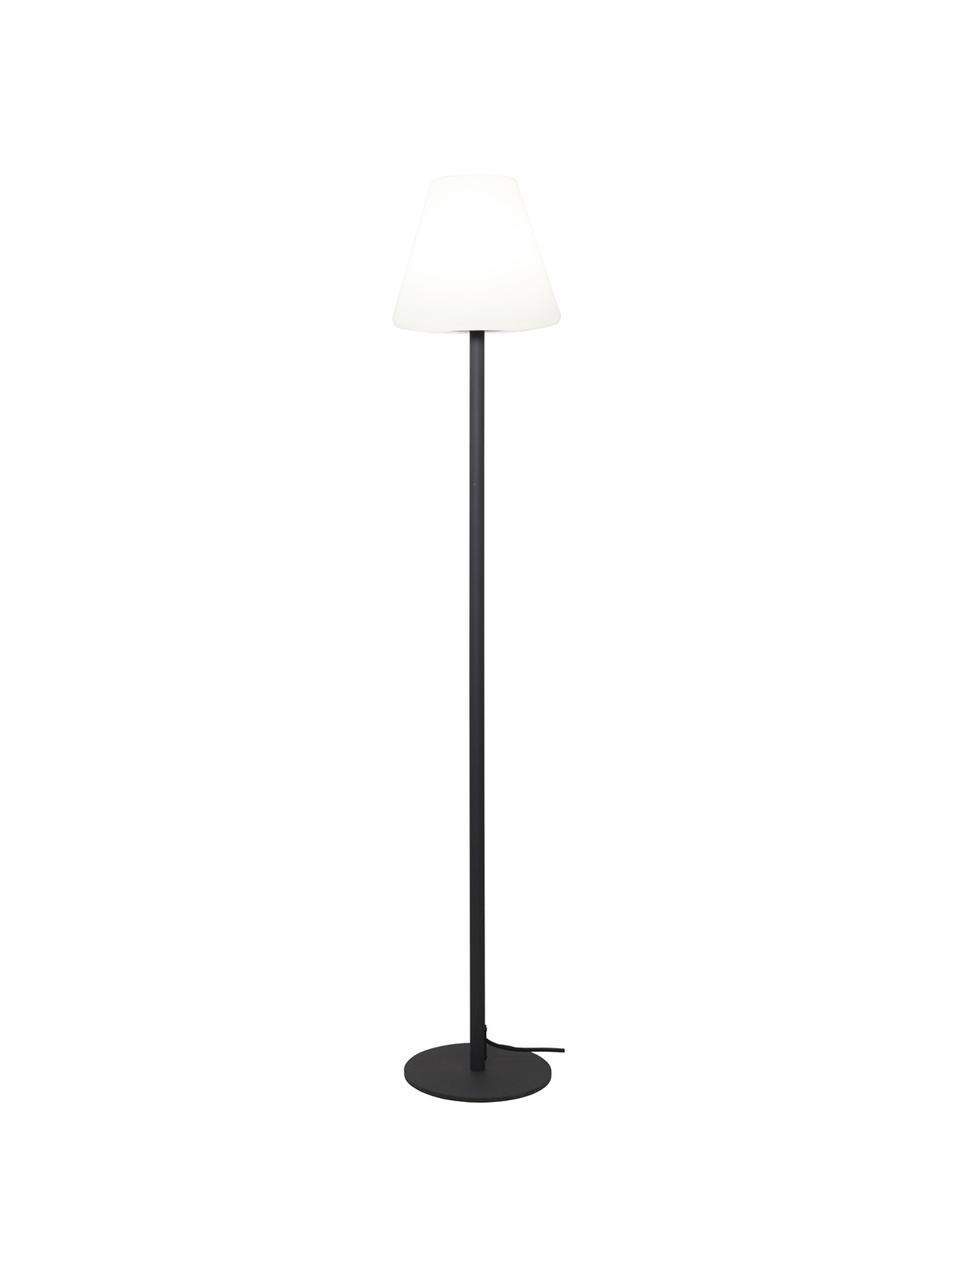 Outdoor LED-Stehlampe Gardenlight mit Stecker, Lampenschirm: Kunststoff, Lampenfuß: Metall, beschichtet, Weiß, Anthrazit, Ø 28 x H 150 cm